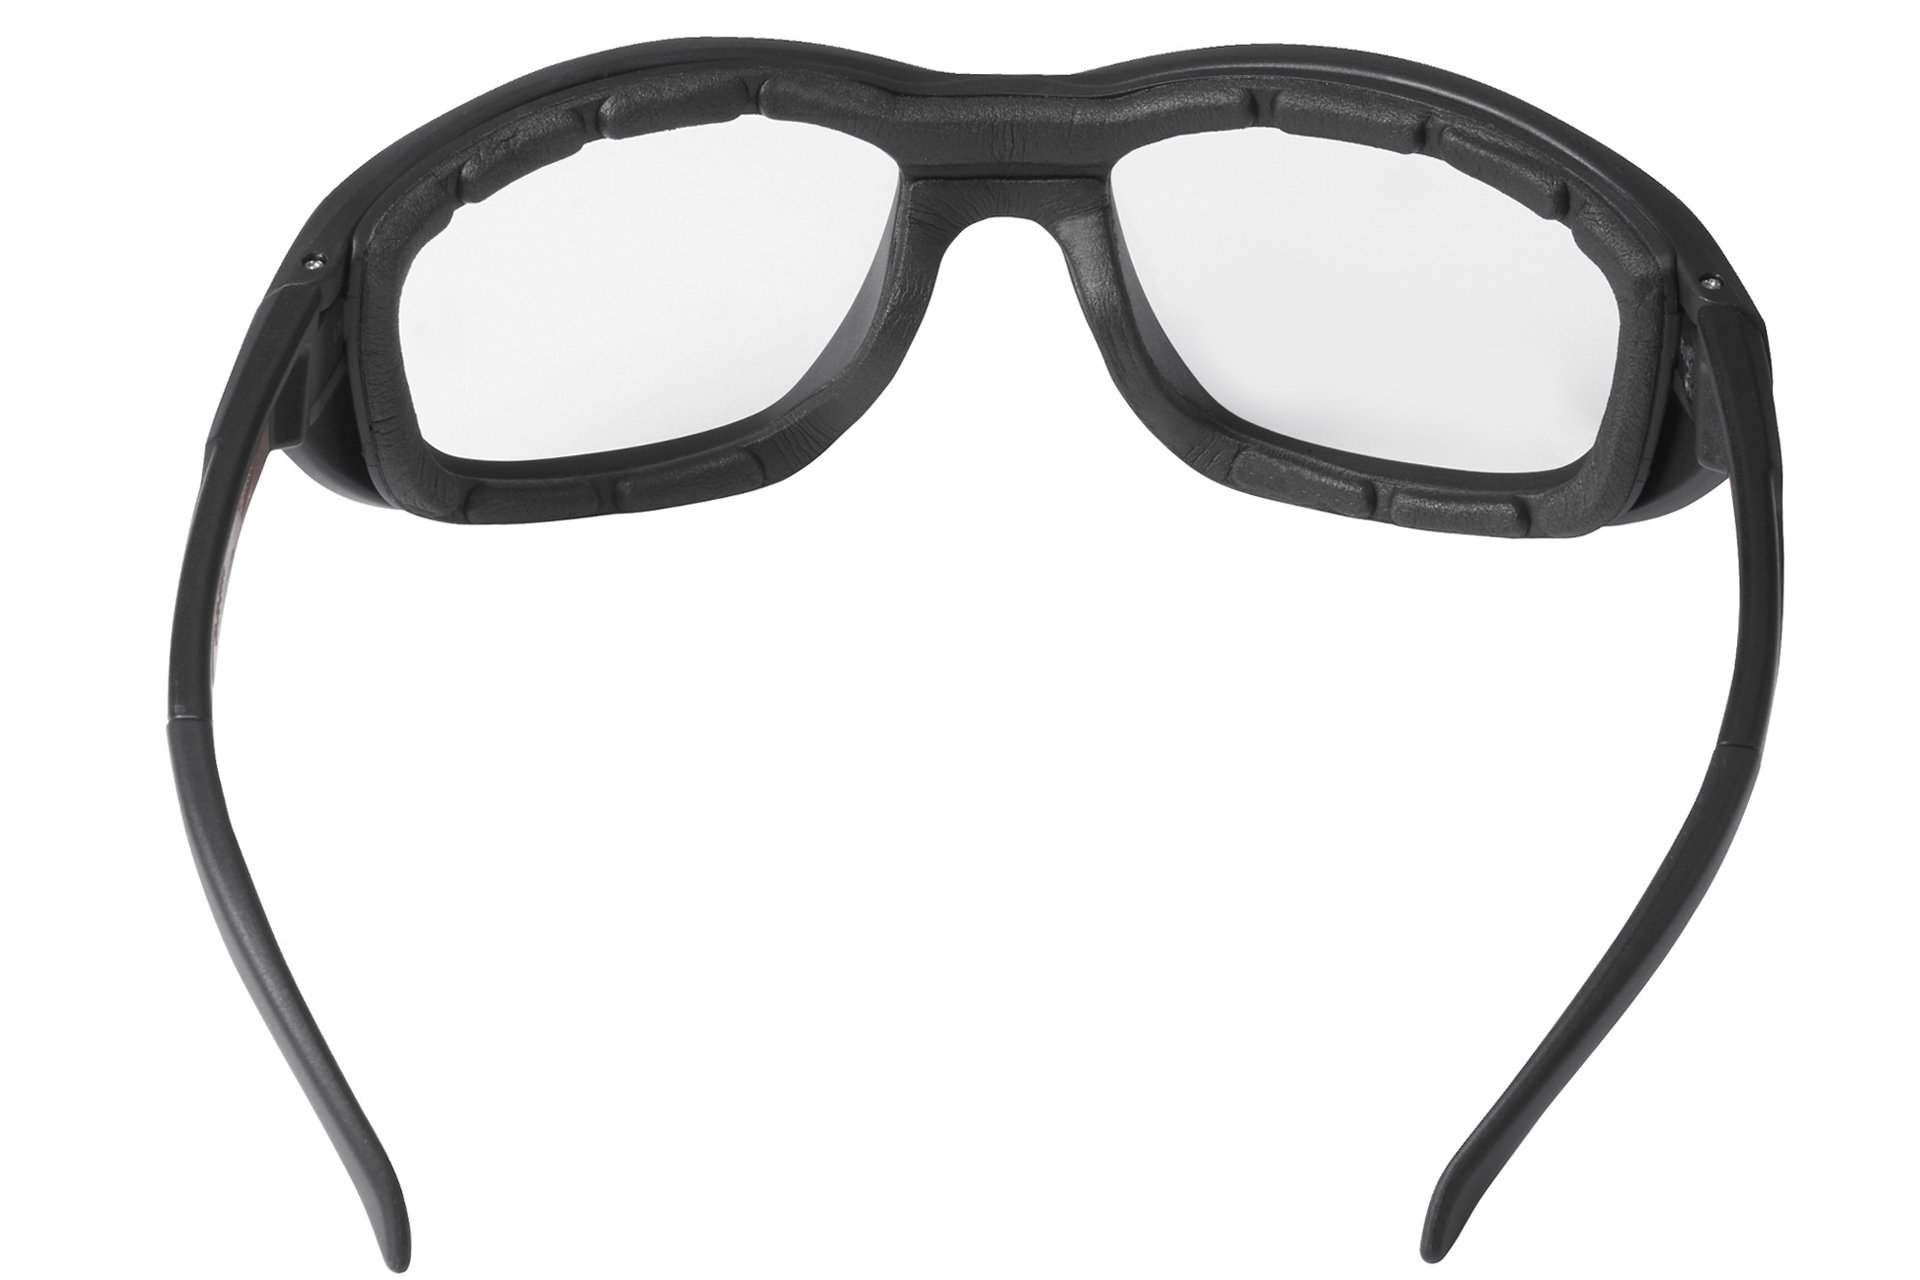 Milwaukee Premium Schutzbrille mit Schaumstoffauflage, klar